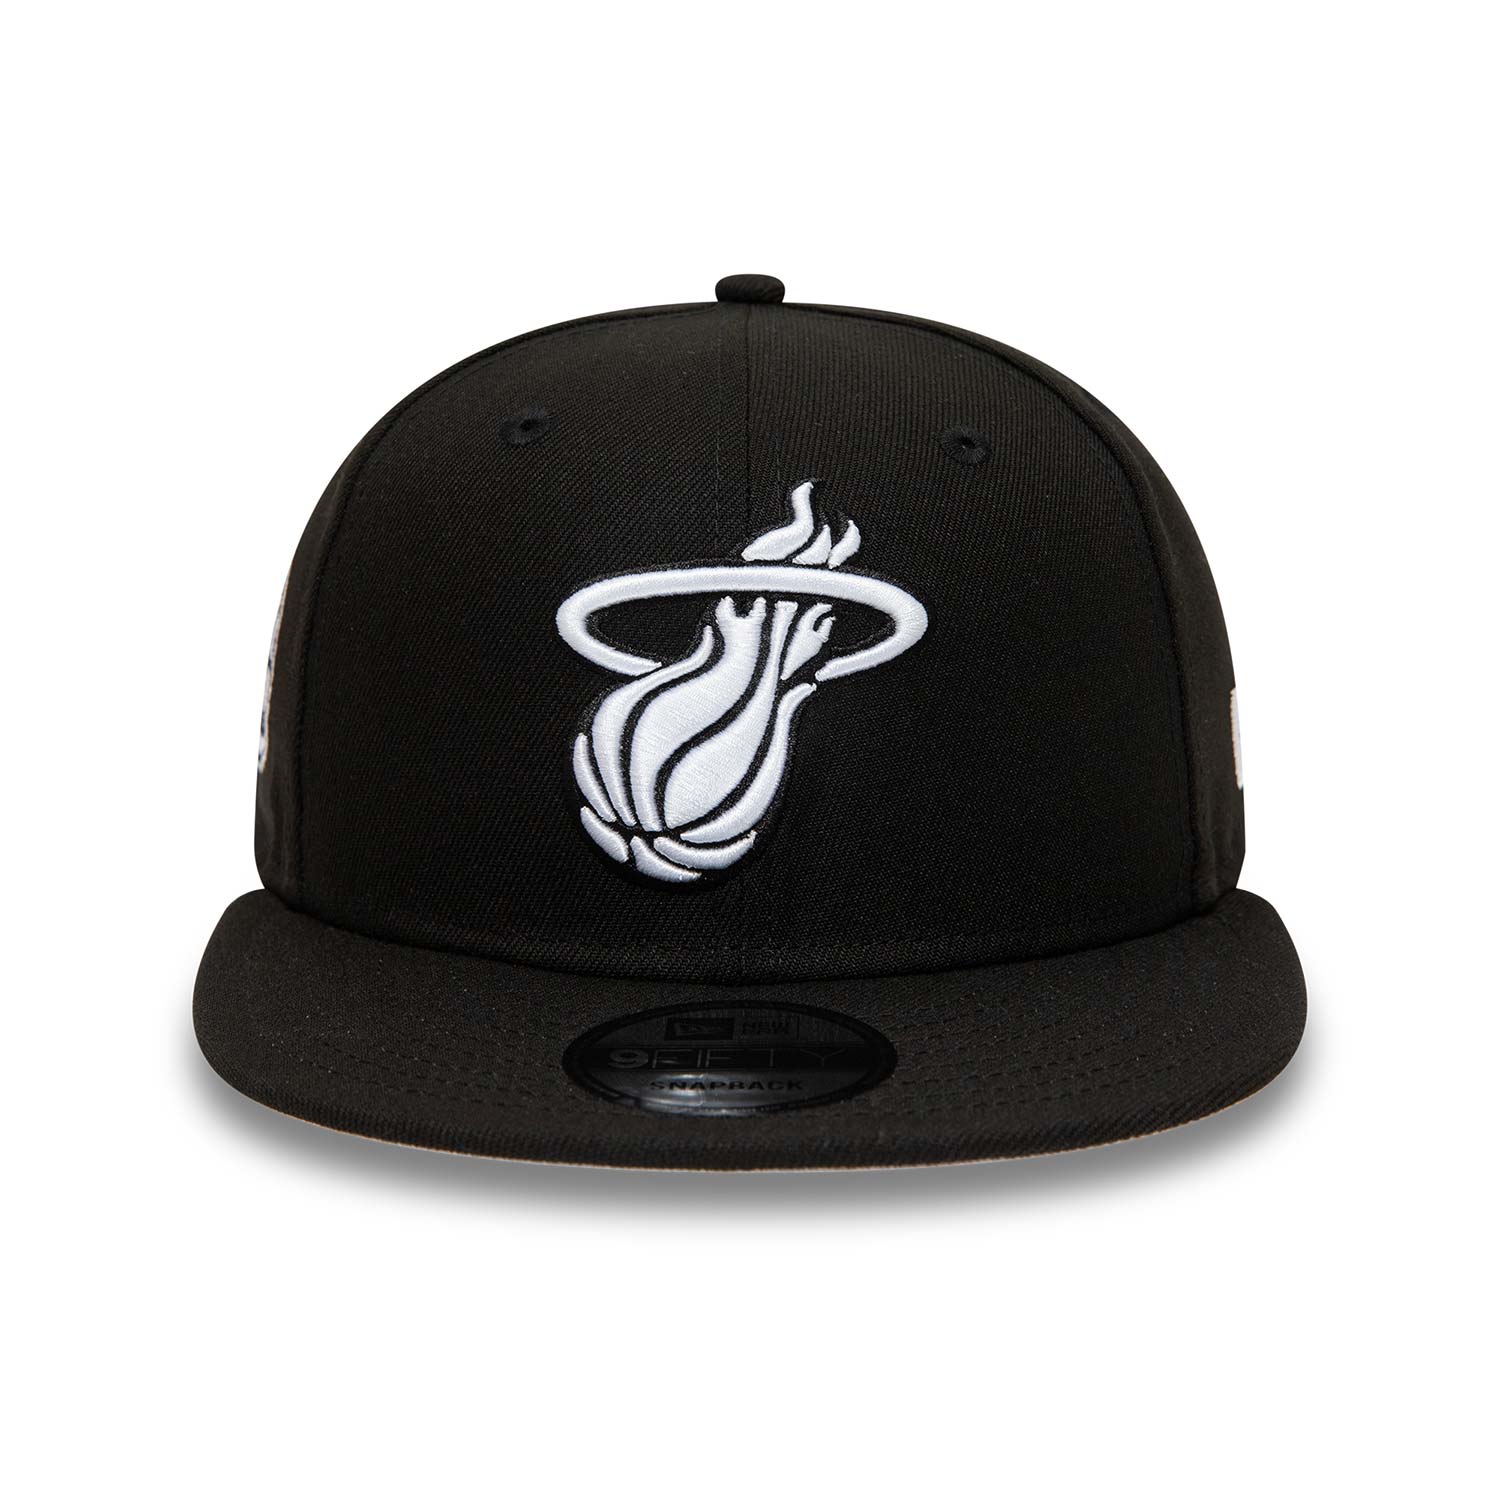 Miami Heat Black 9FIFTY Snapback Cap